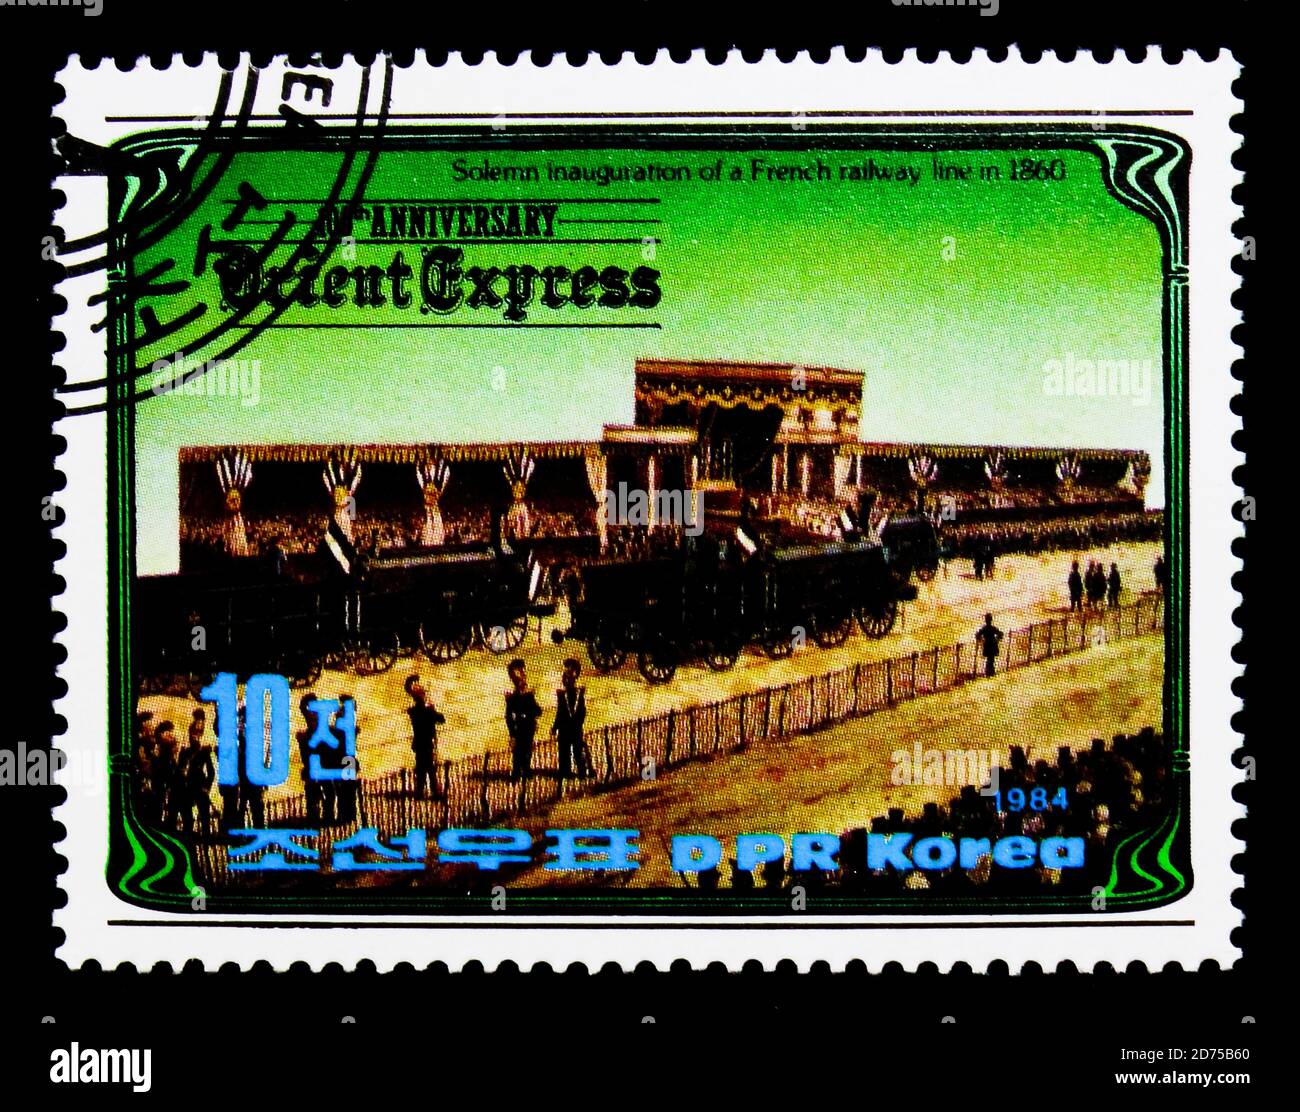 MOSCOU, RUSSIE - 25 NOVEMBRE 2017 : un timbre imprimé en république populaire démocratique de Corée montre l'ouverture d'une ligne ferroviaire française (1860), 100 ans Banque D'Images